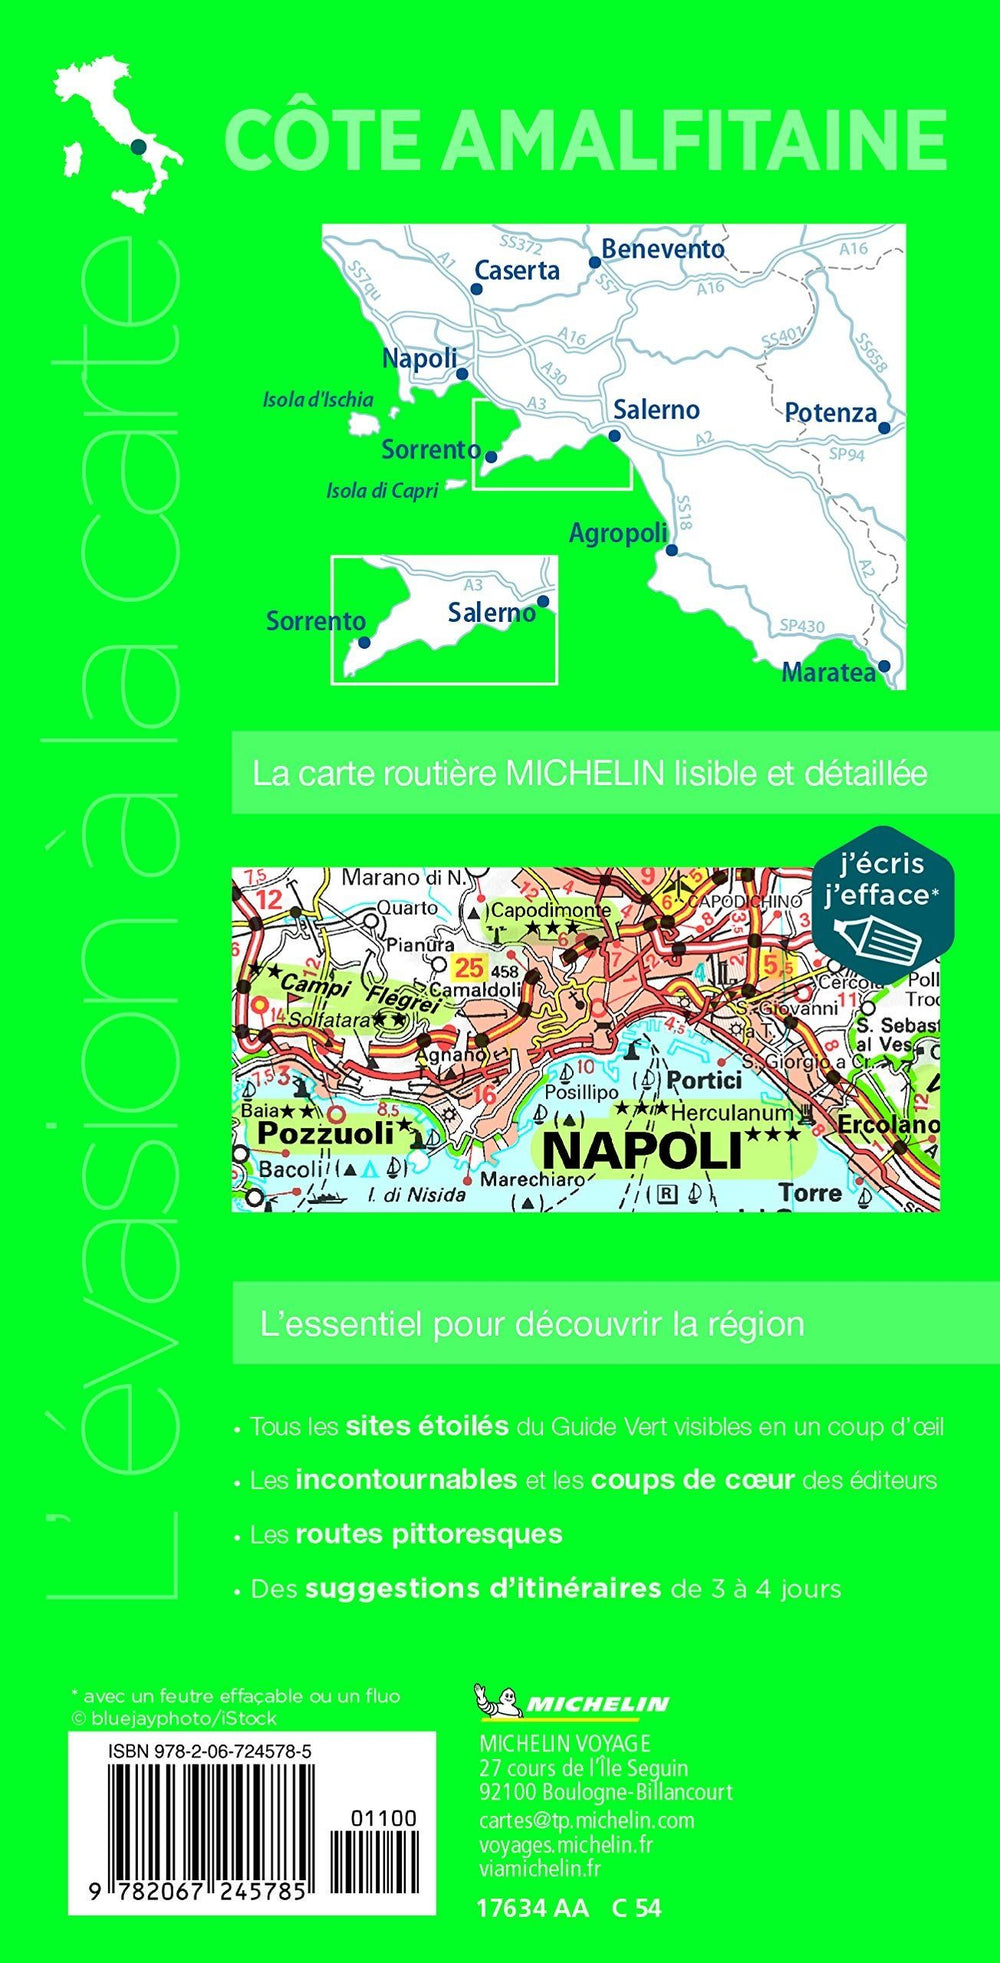 Carte routière plastifiée - Côte Amalfitaine (Naples, Pompéi, Capri, Cilento) | Michelin carte pliée Michelin 